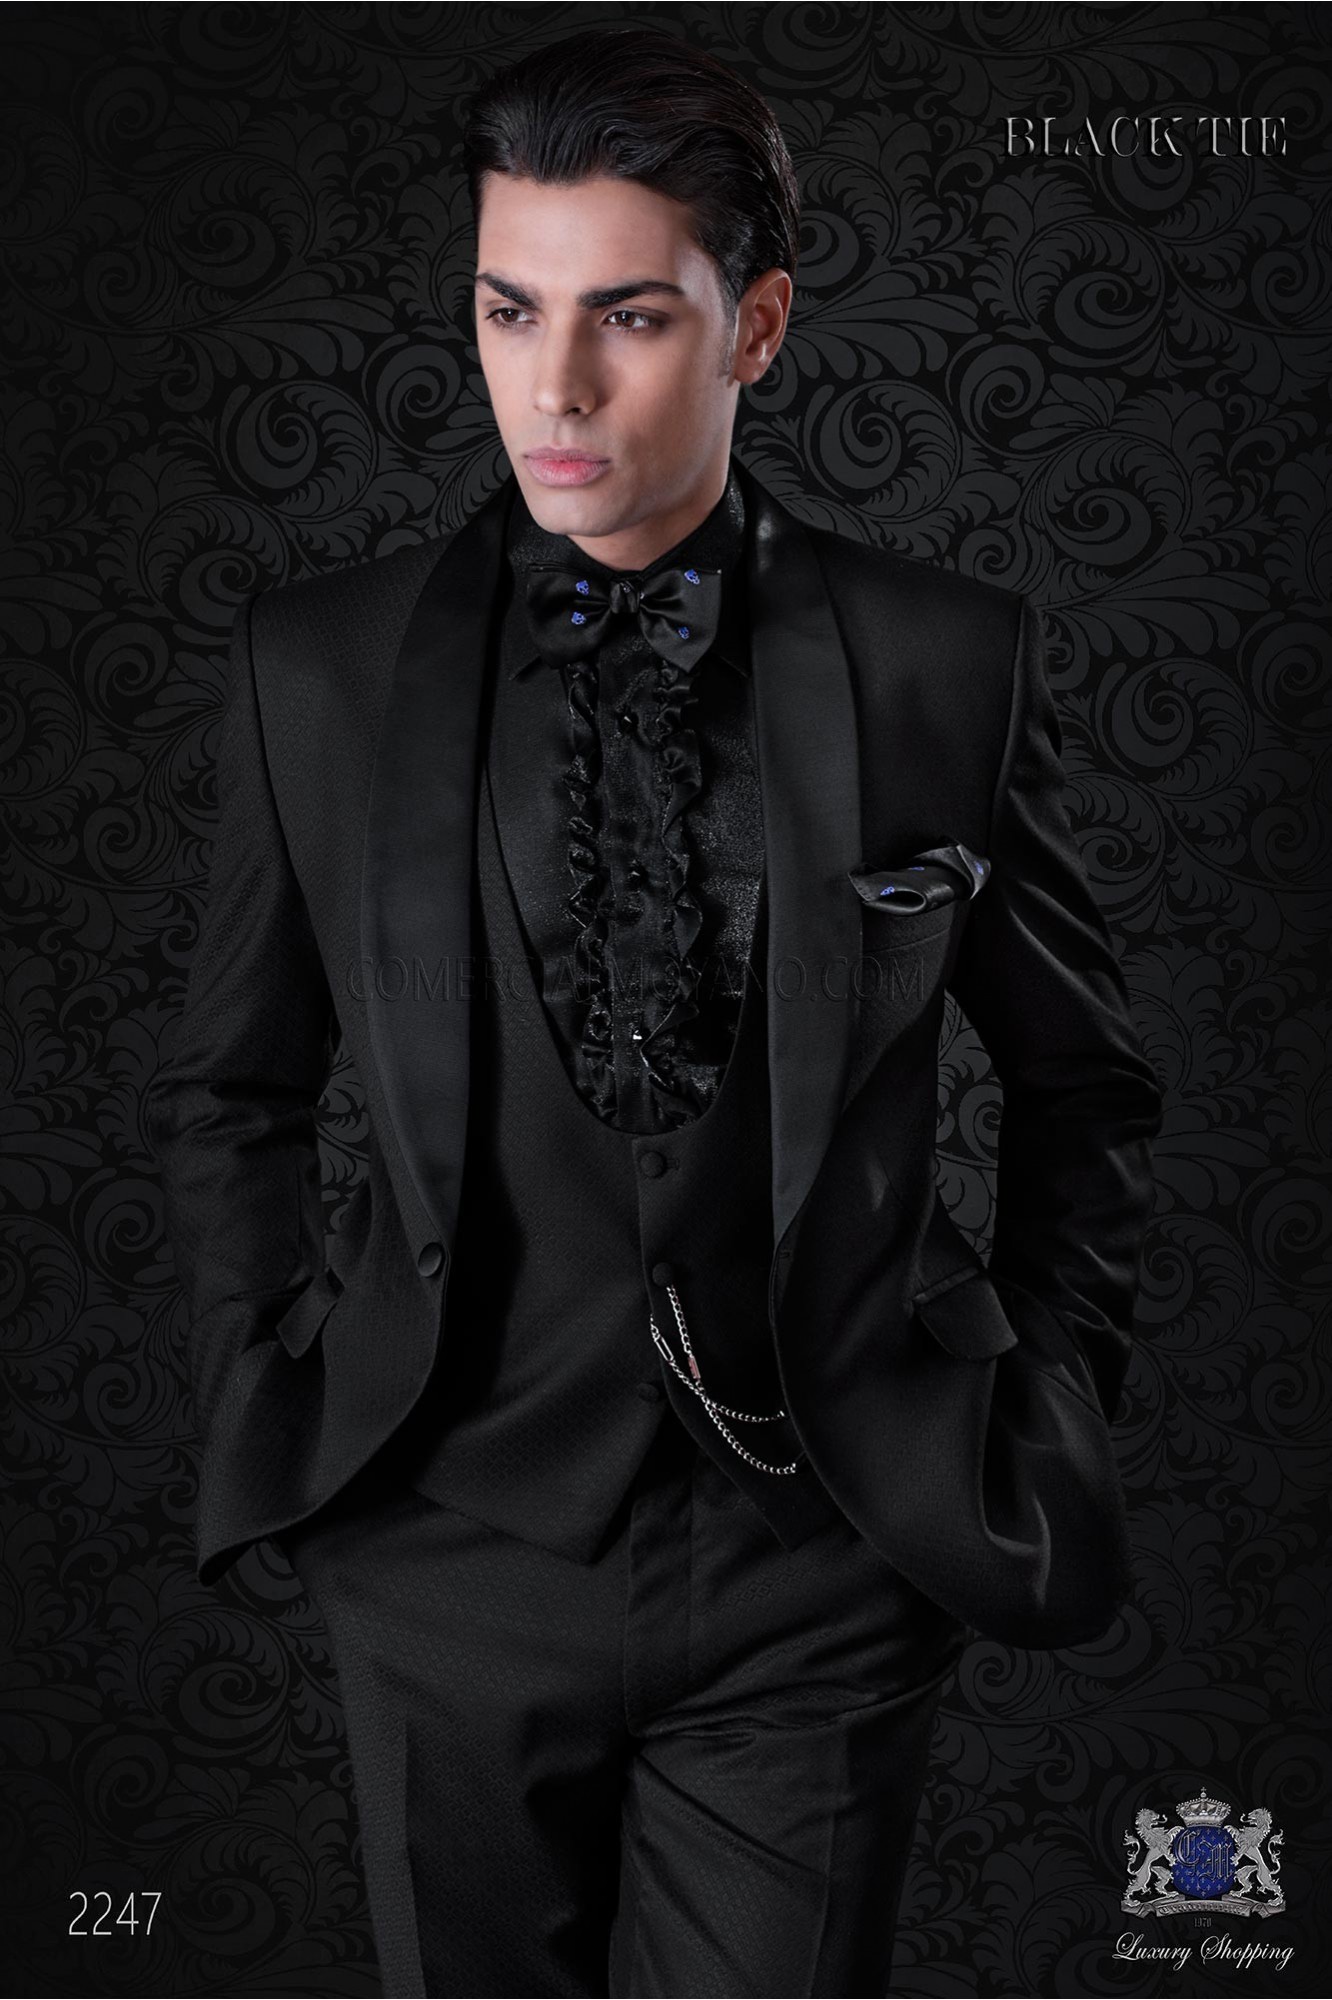 Esmoquin italiano negro con solapa chal modelo: 2247 Mario Moyano colección Black Tie